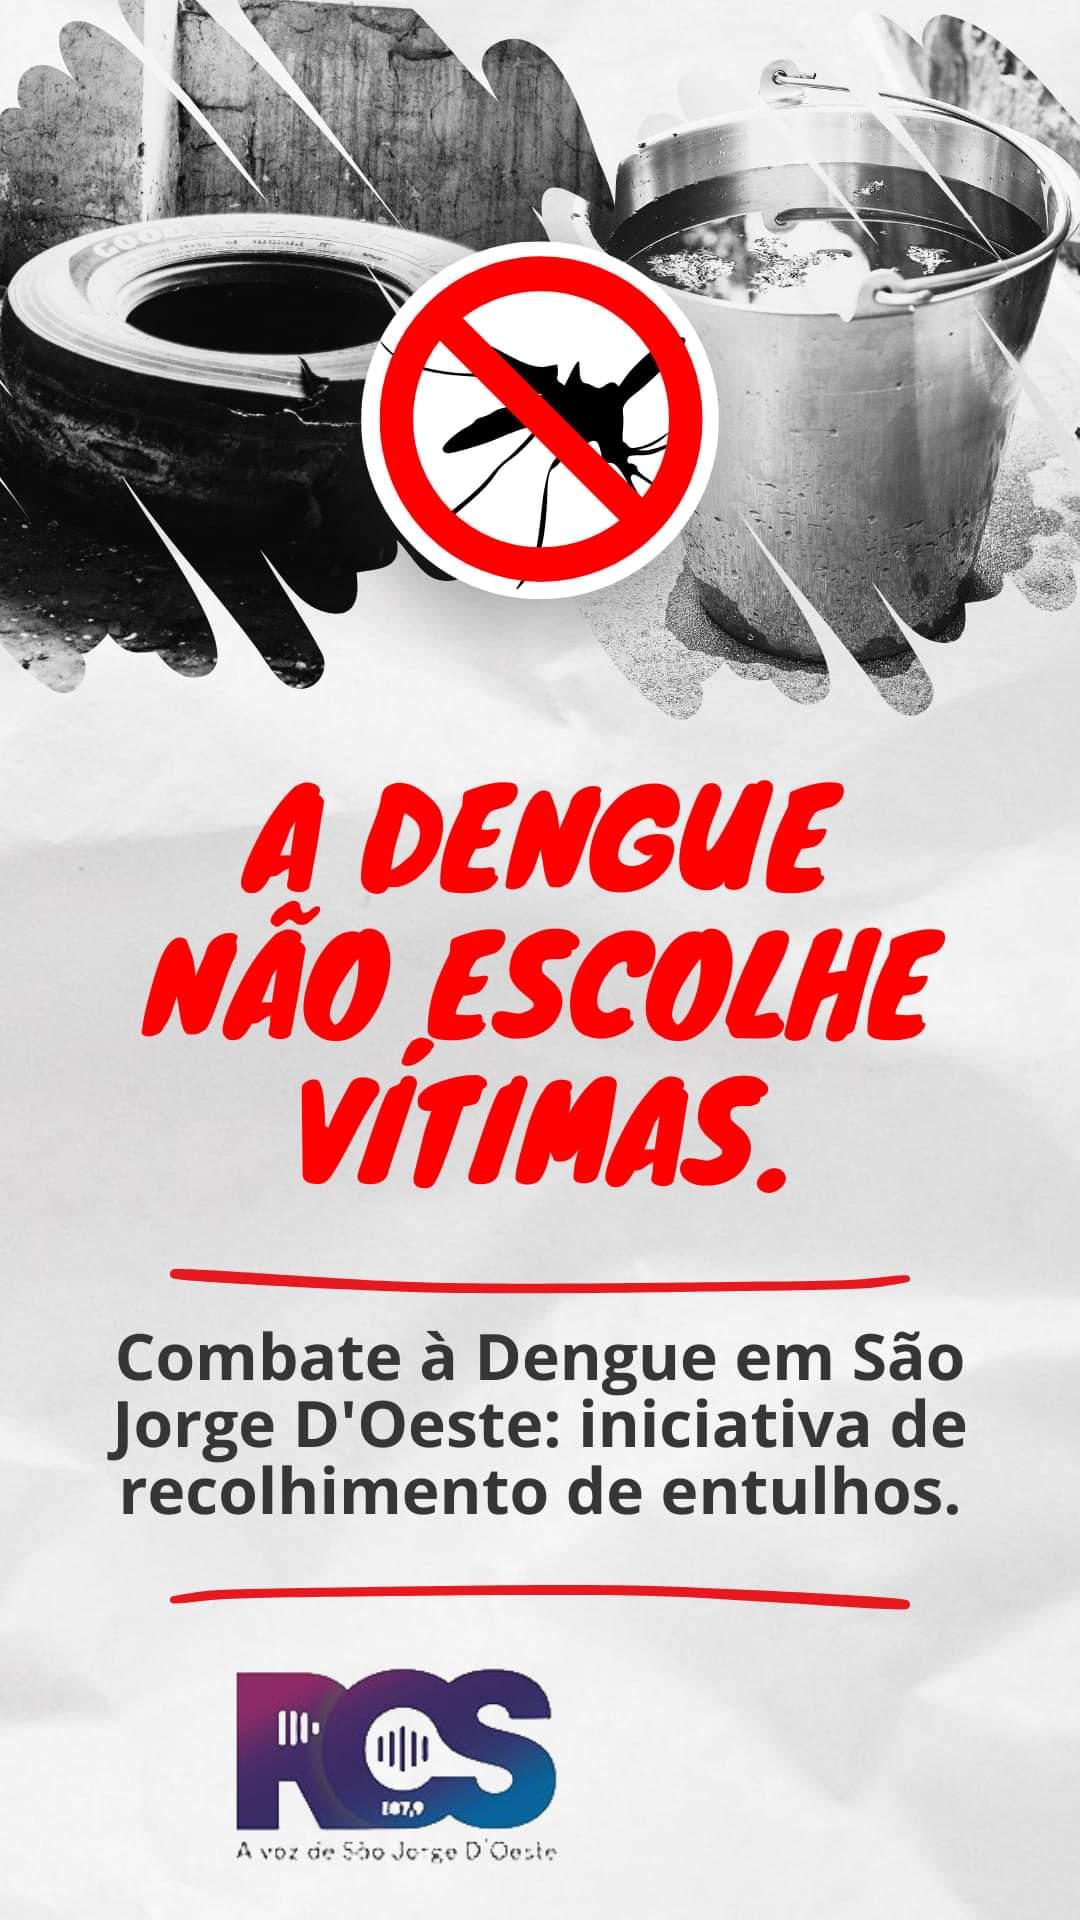 Combate à Dengue em São Jorge D'Oeste: iniciativa de recolhimento de entulhos.